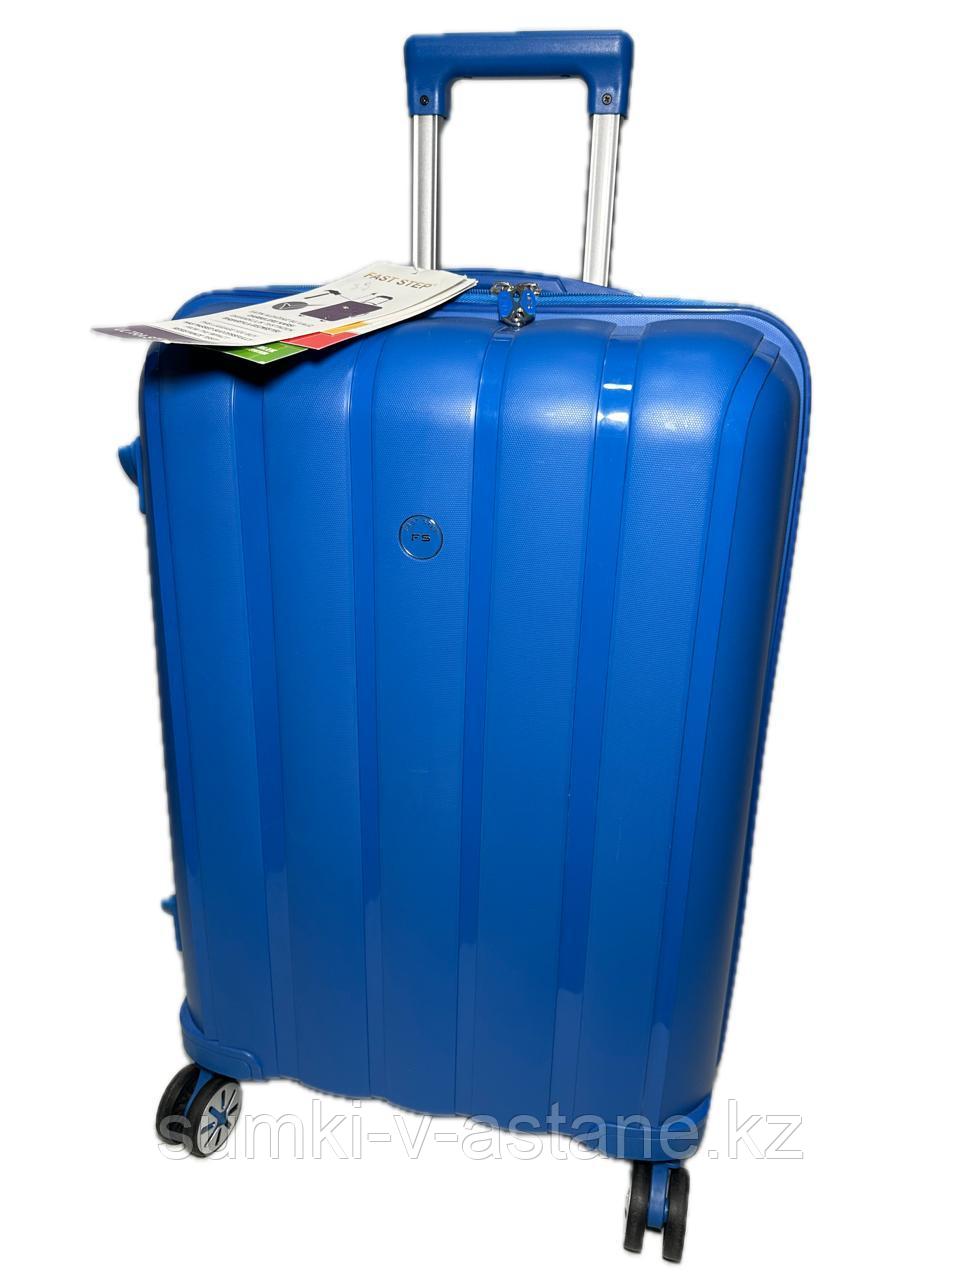 Средний пластиковый дорожный чемодан на 4-х колёсах Fast step (высота 66 см, ширина 43 см, глубина 26 см)